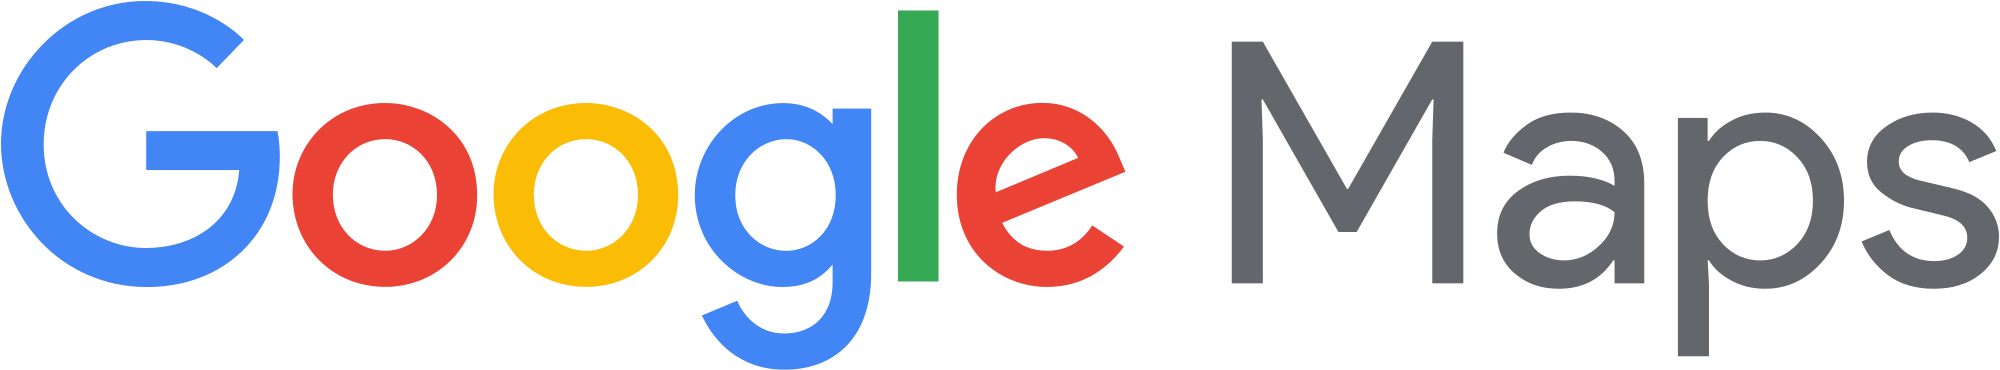 Google Photos Logo PNG